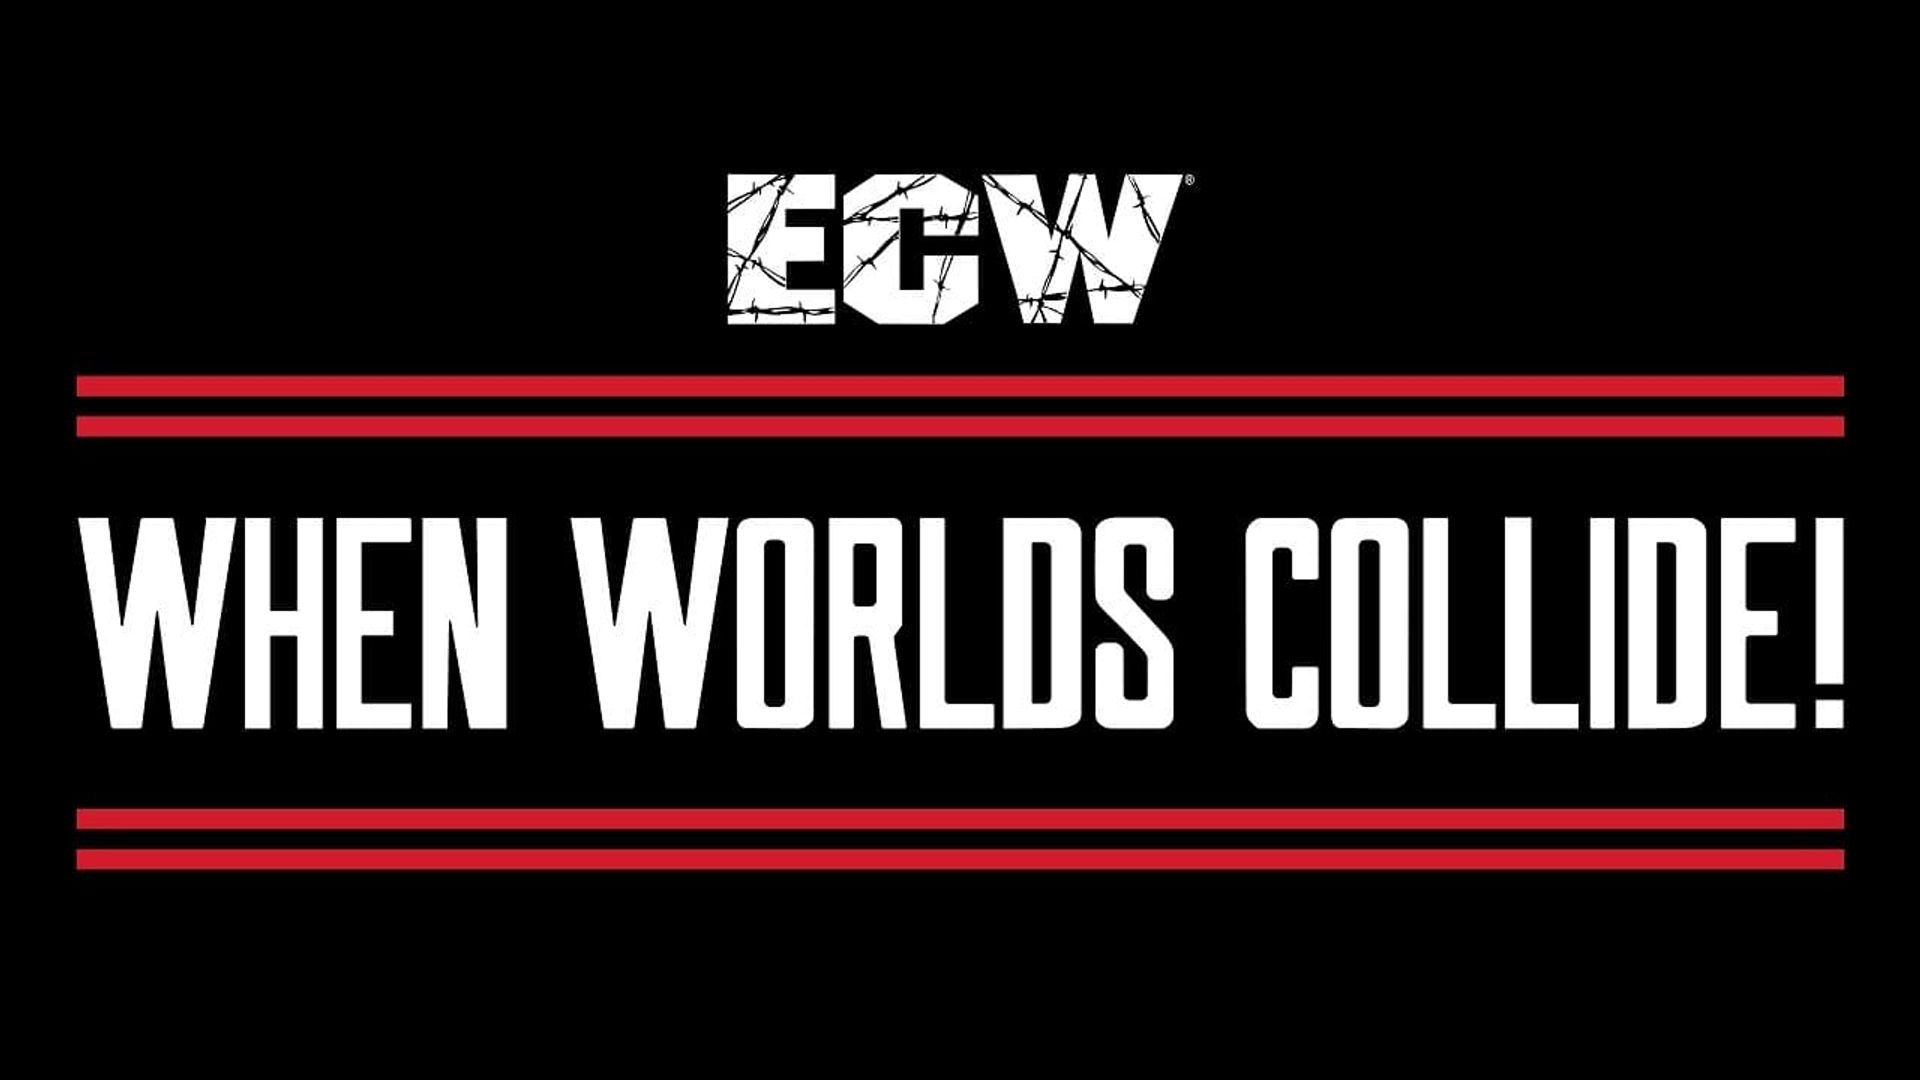 ECW When Worlds Collide background